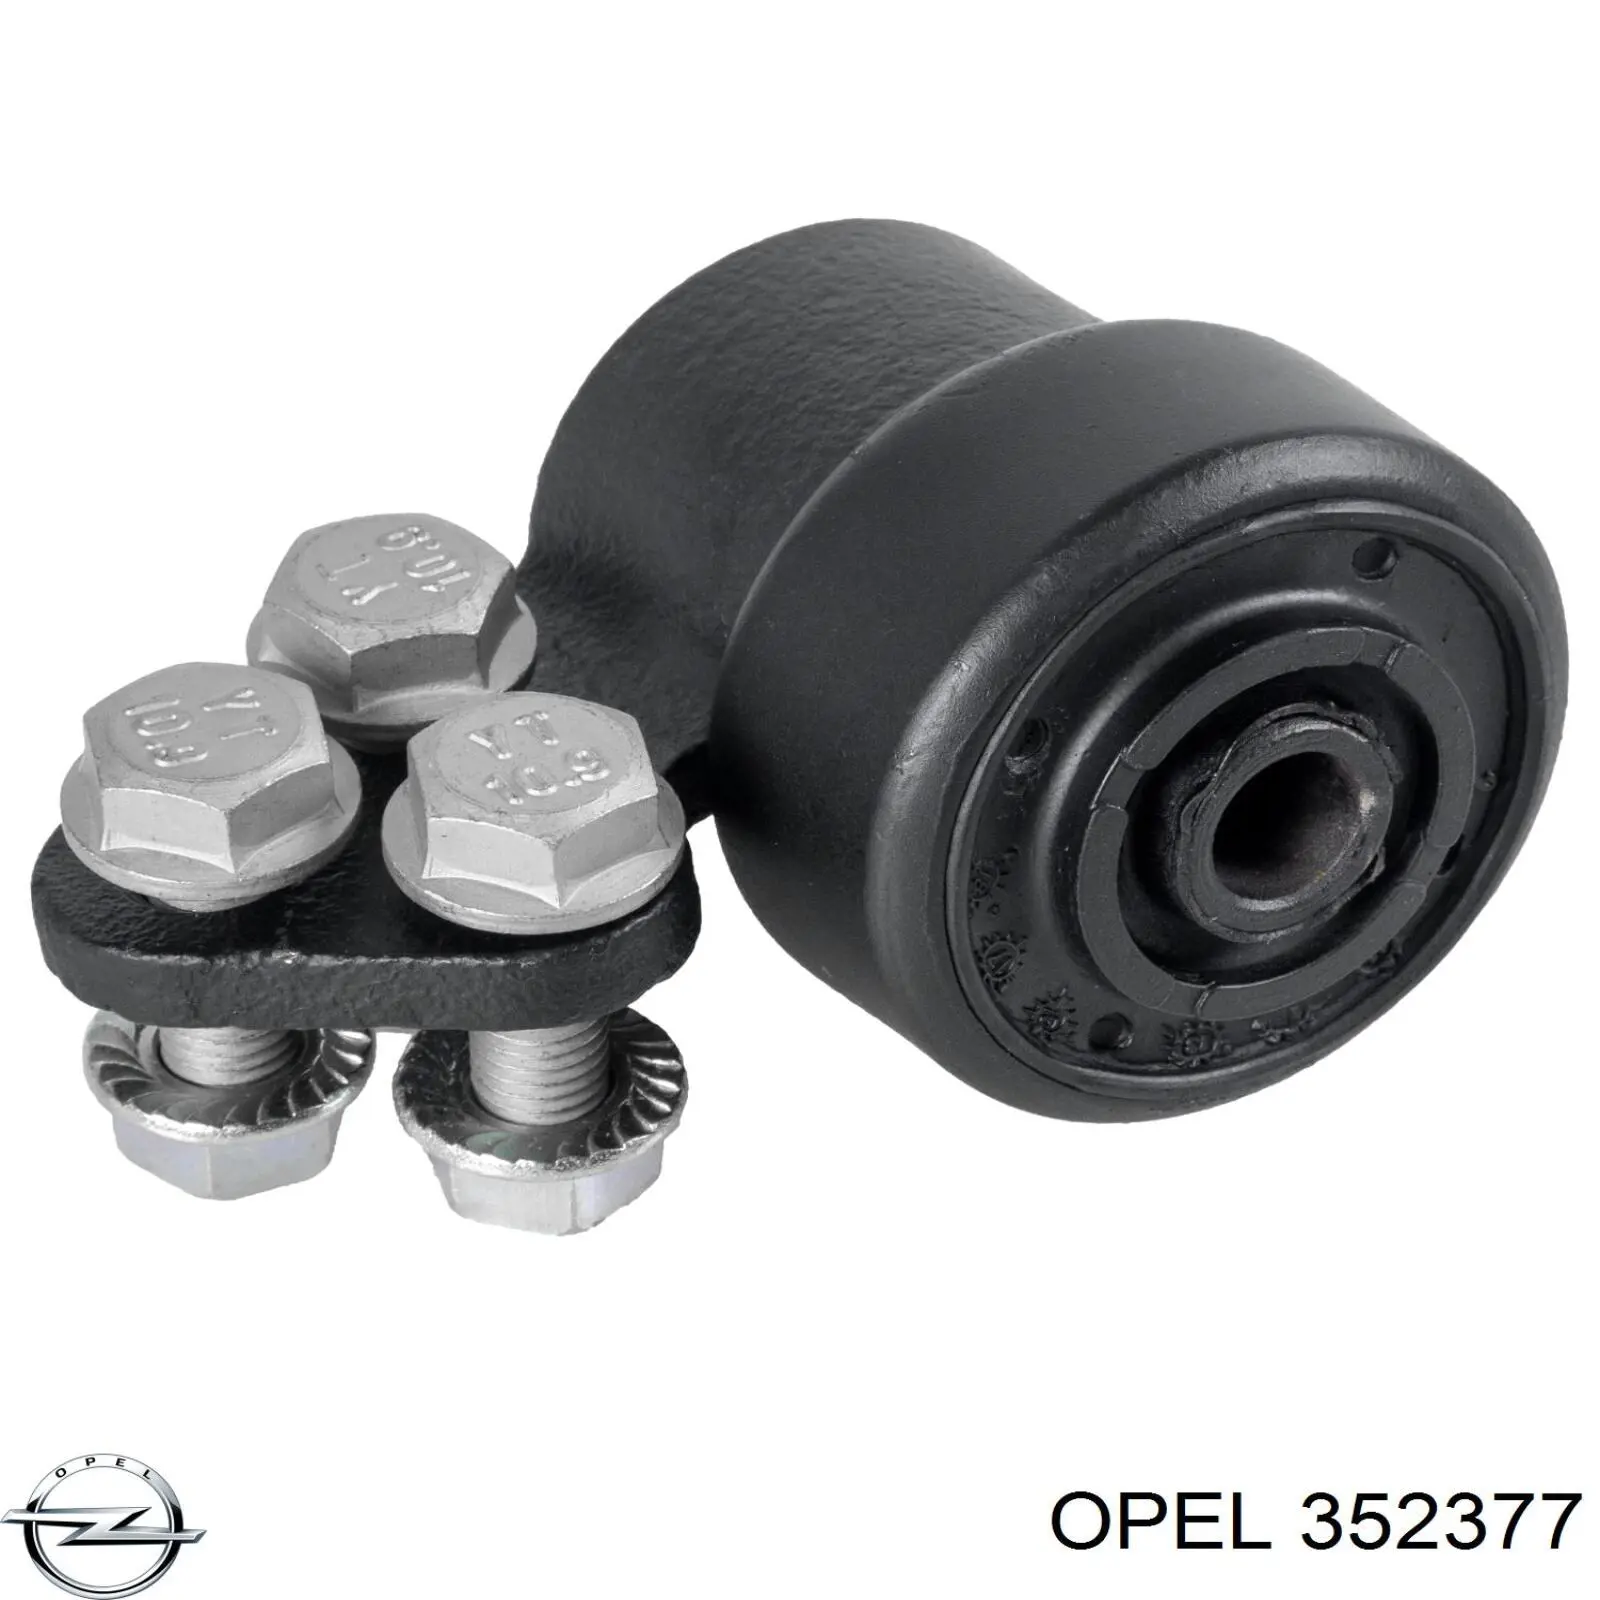 352377 Opel silentblock de suspensión delantero inferior